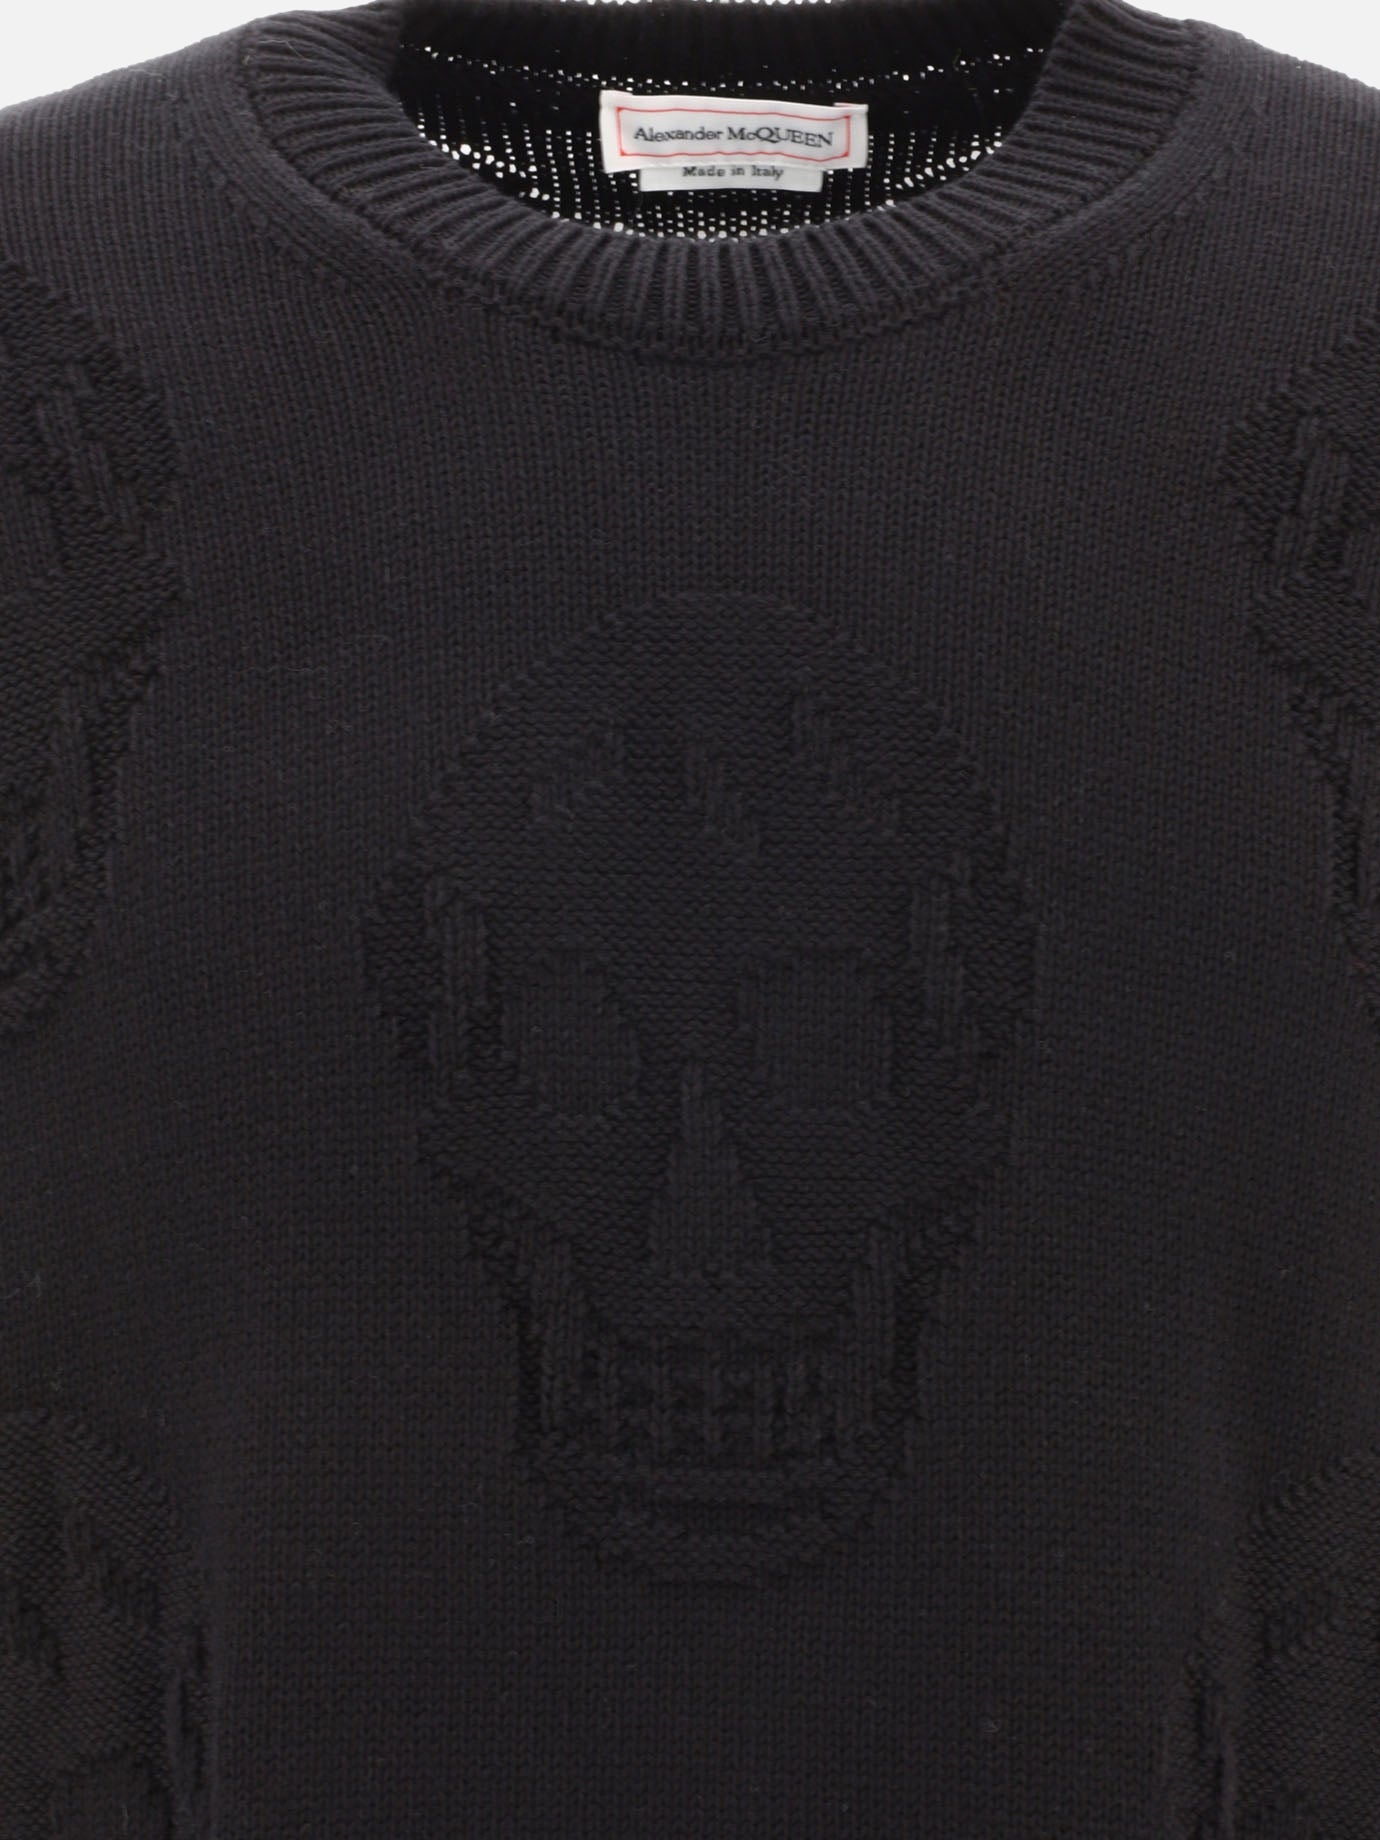 Textured Skull sweater